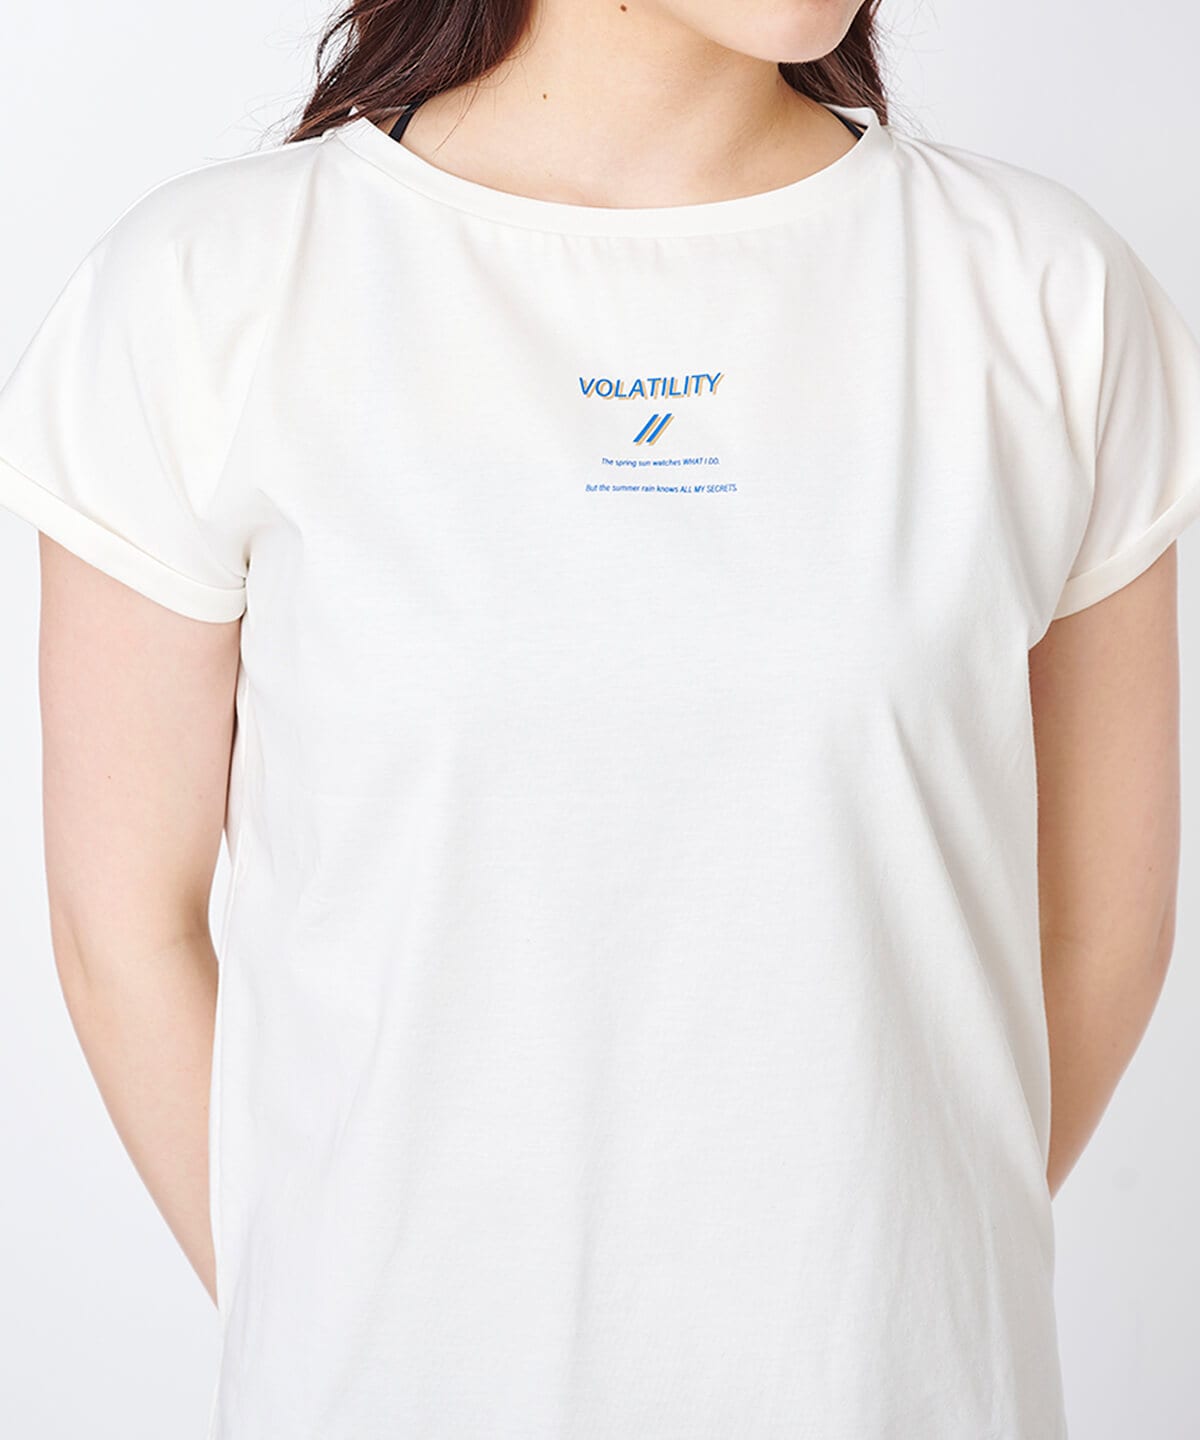 「VOLATILITY」Tシャツ